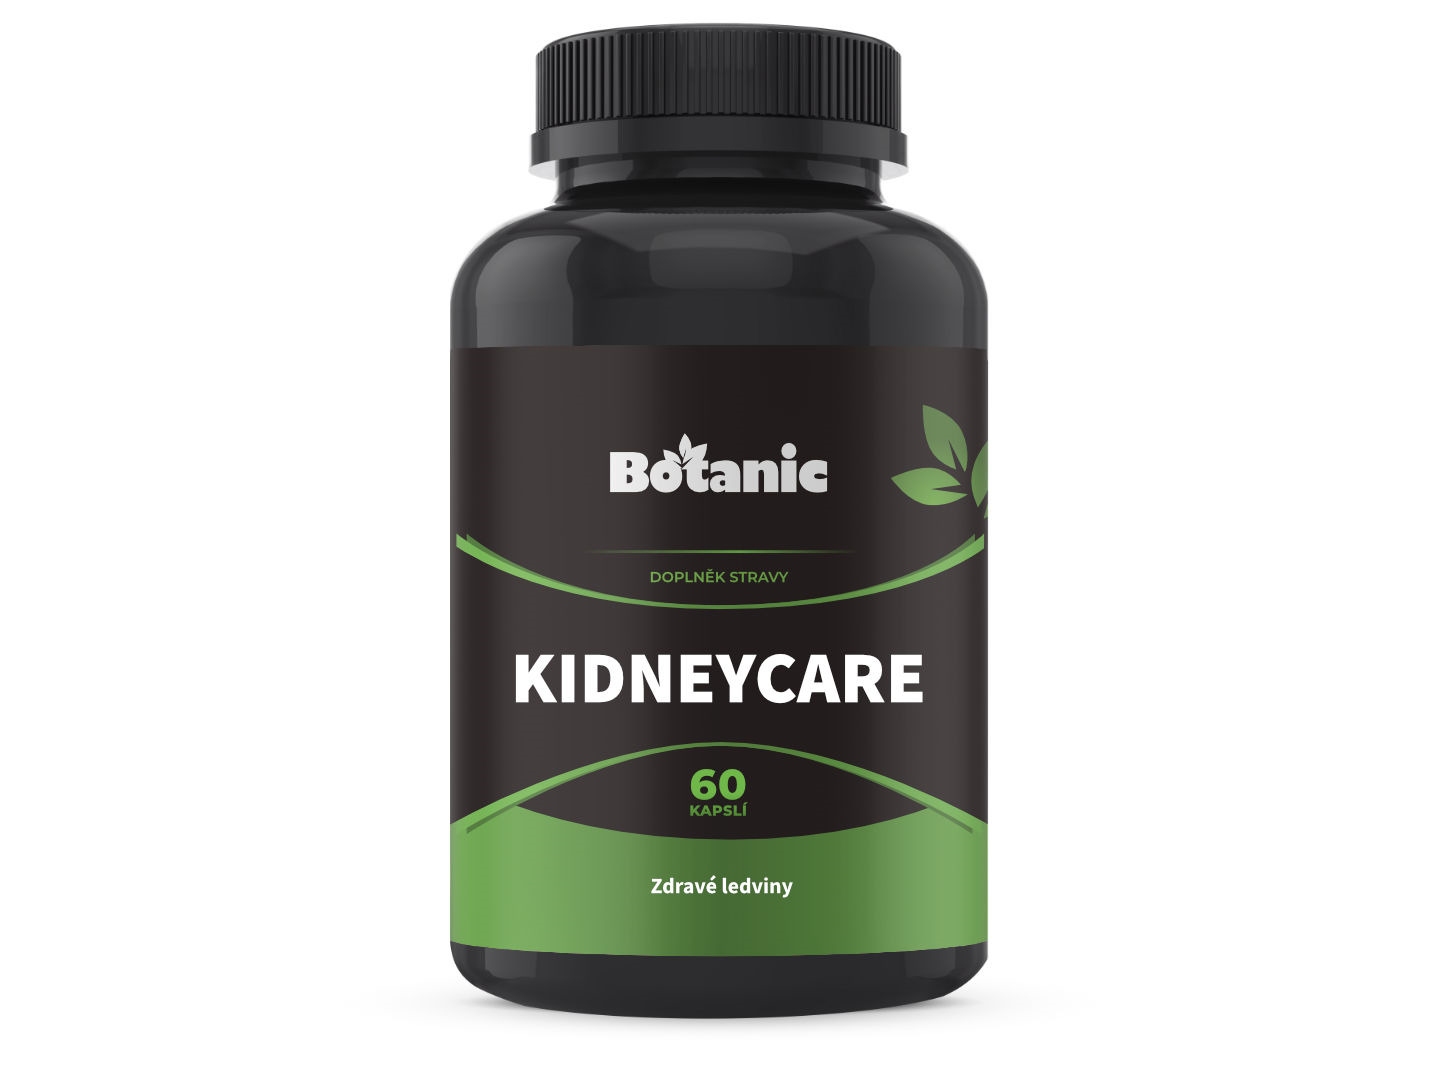 Botanic KidneyCare - Podpora pro ledviny 60kap.